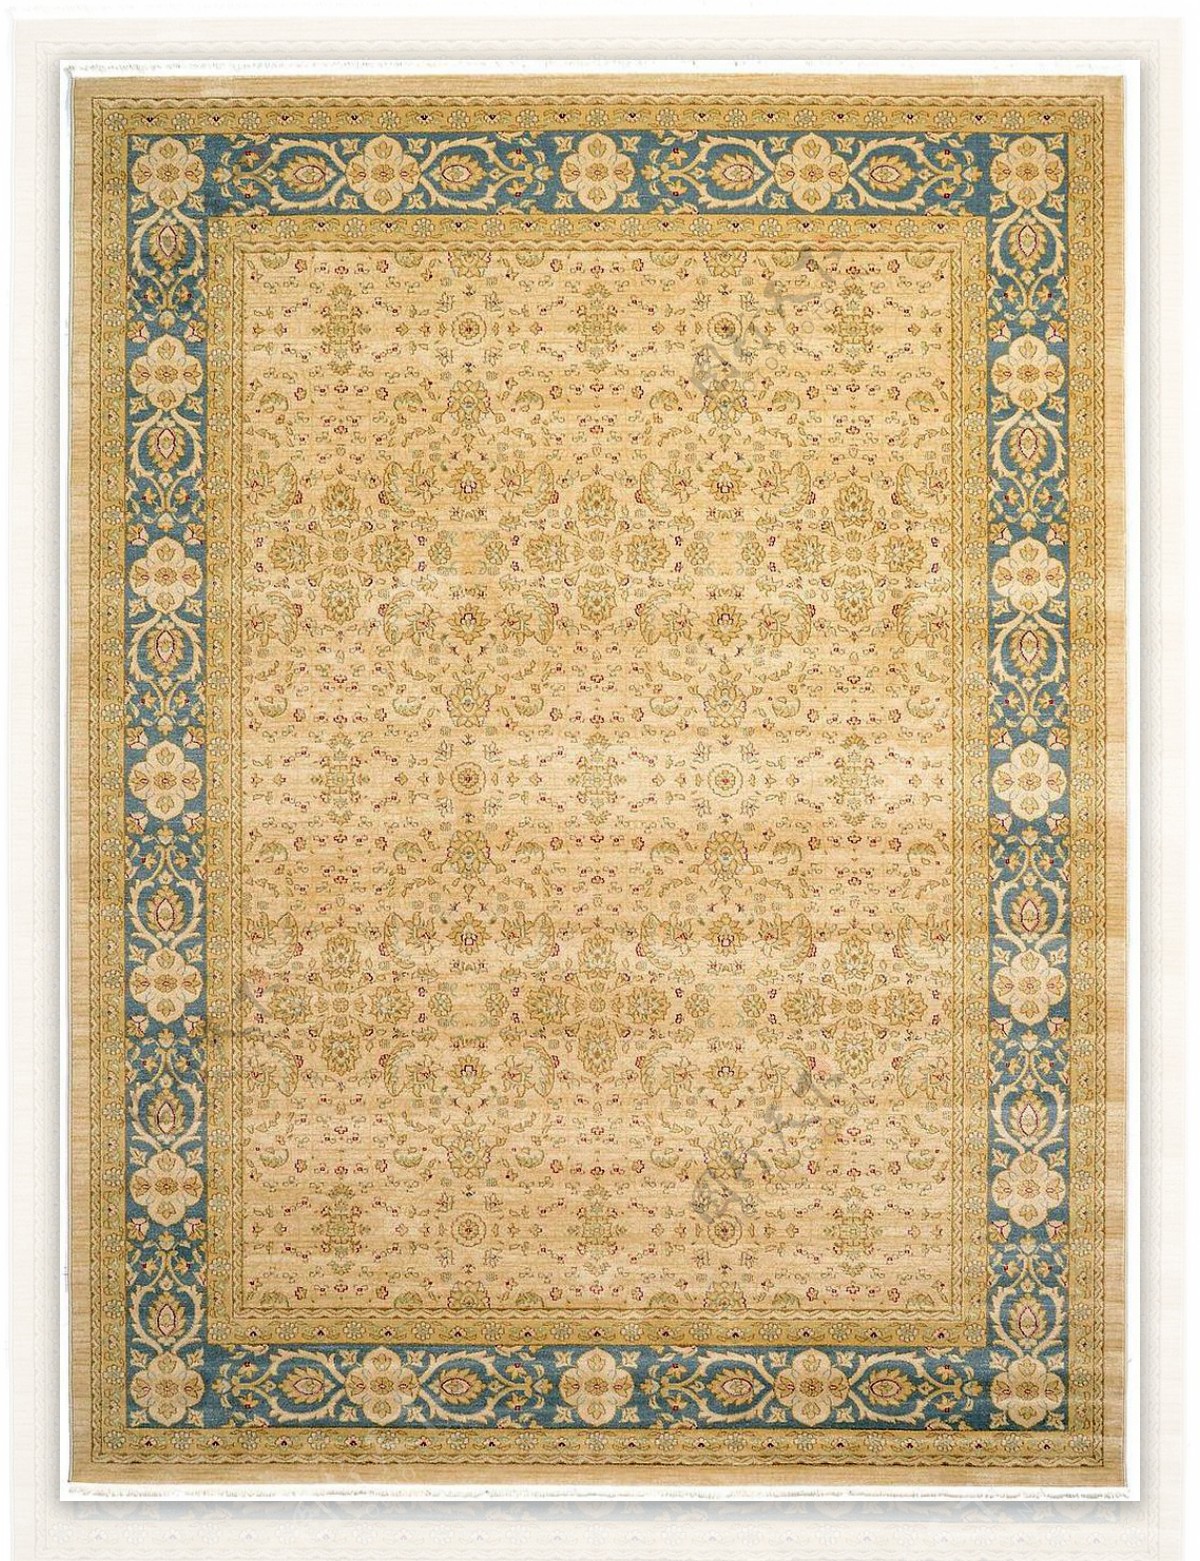 古典欧式经典地毯花纹